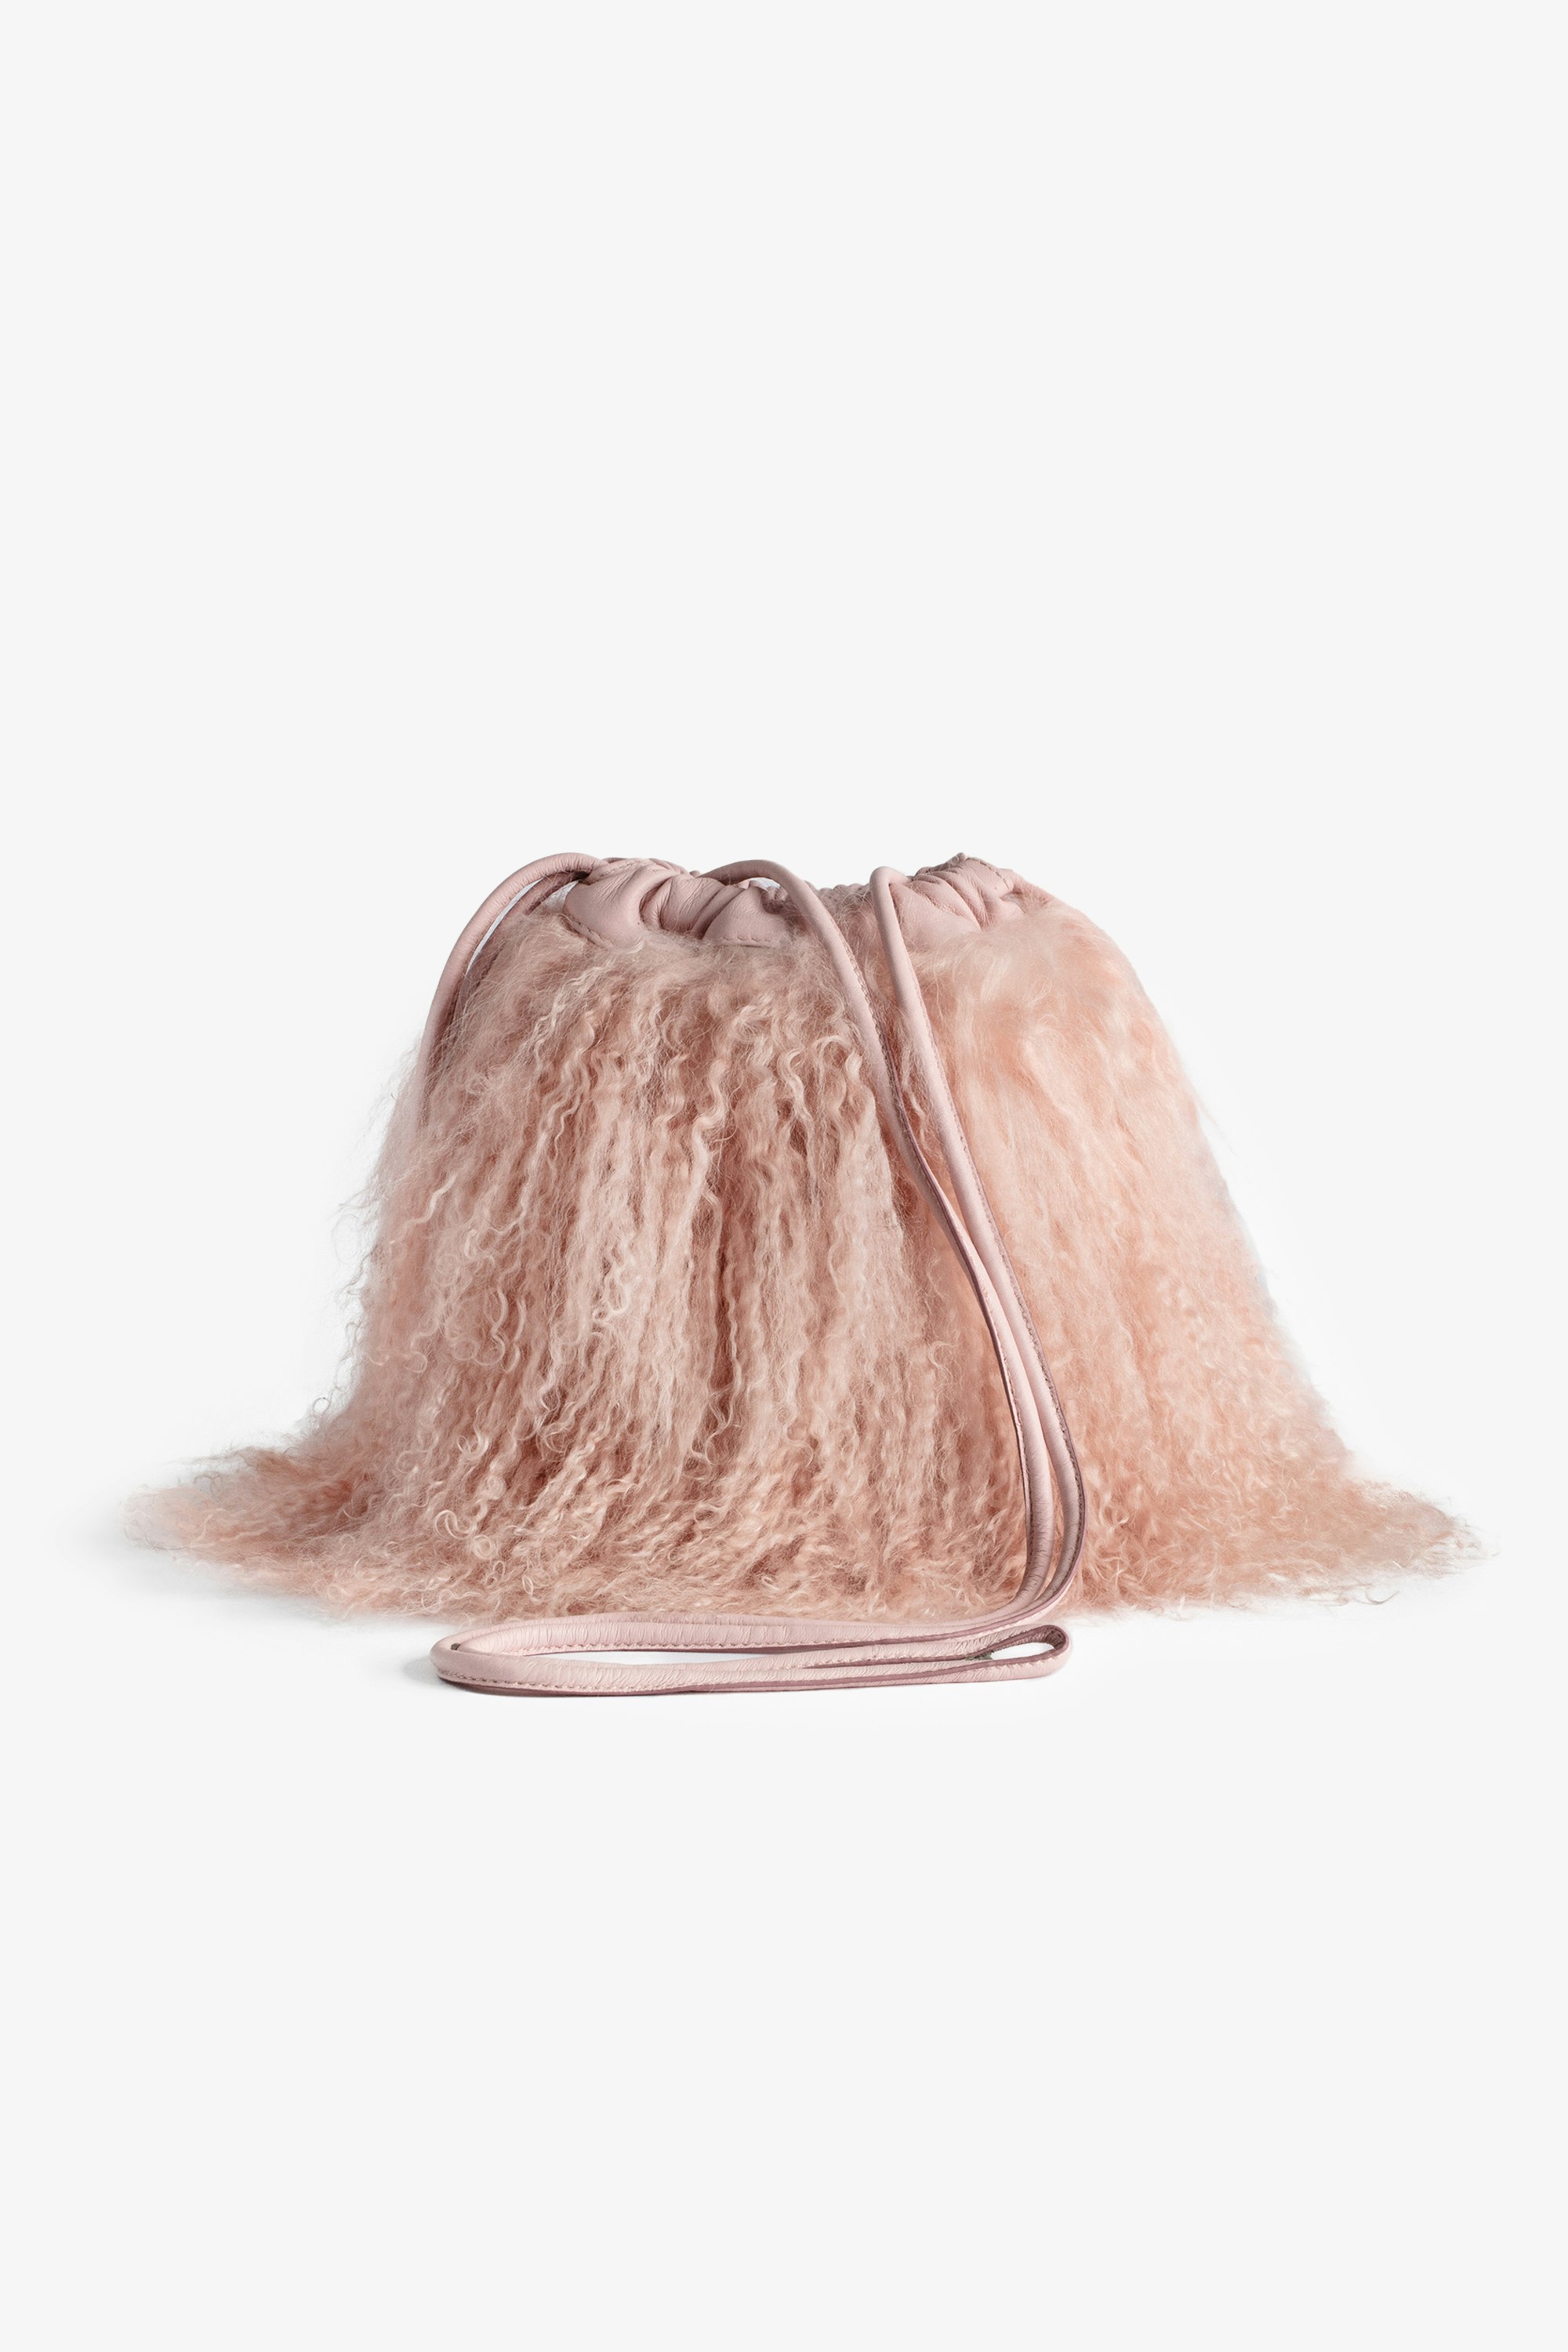 Borsa Rock To Go Frenzy shearling Piccola borsa a secchiello in pelle rosa shearling con coulisse e tracolla da donna.